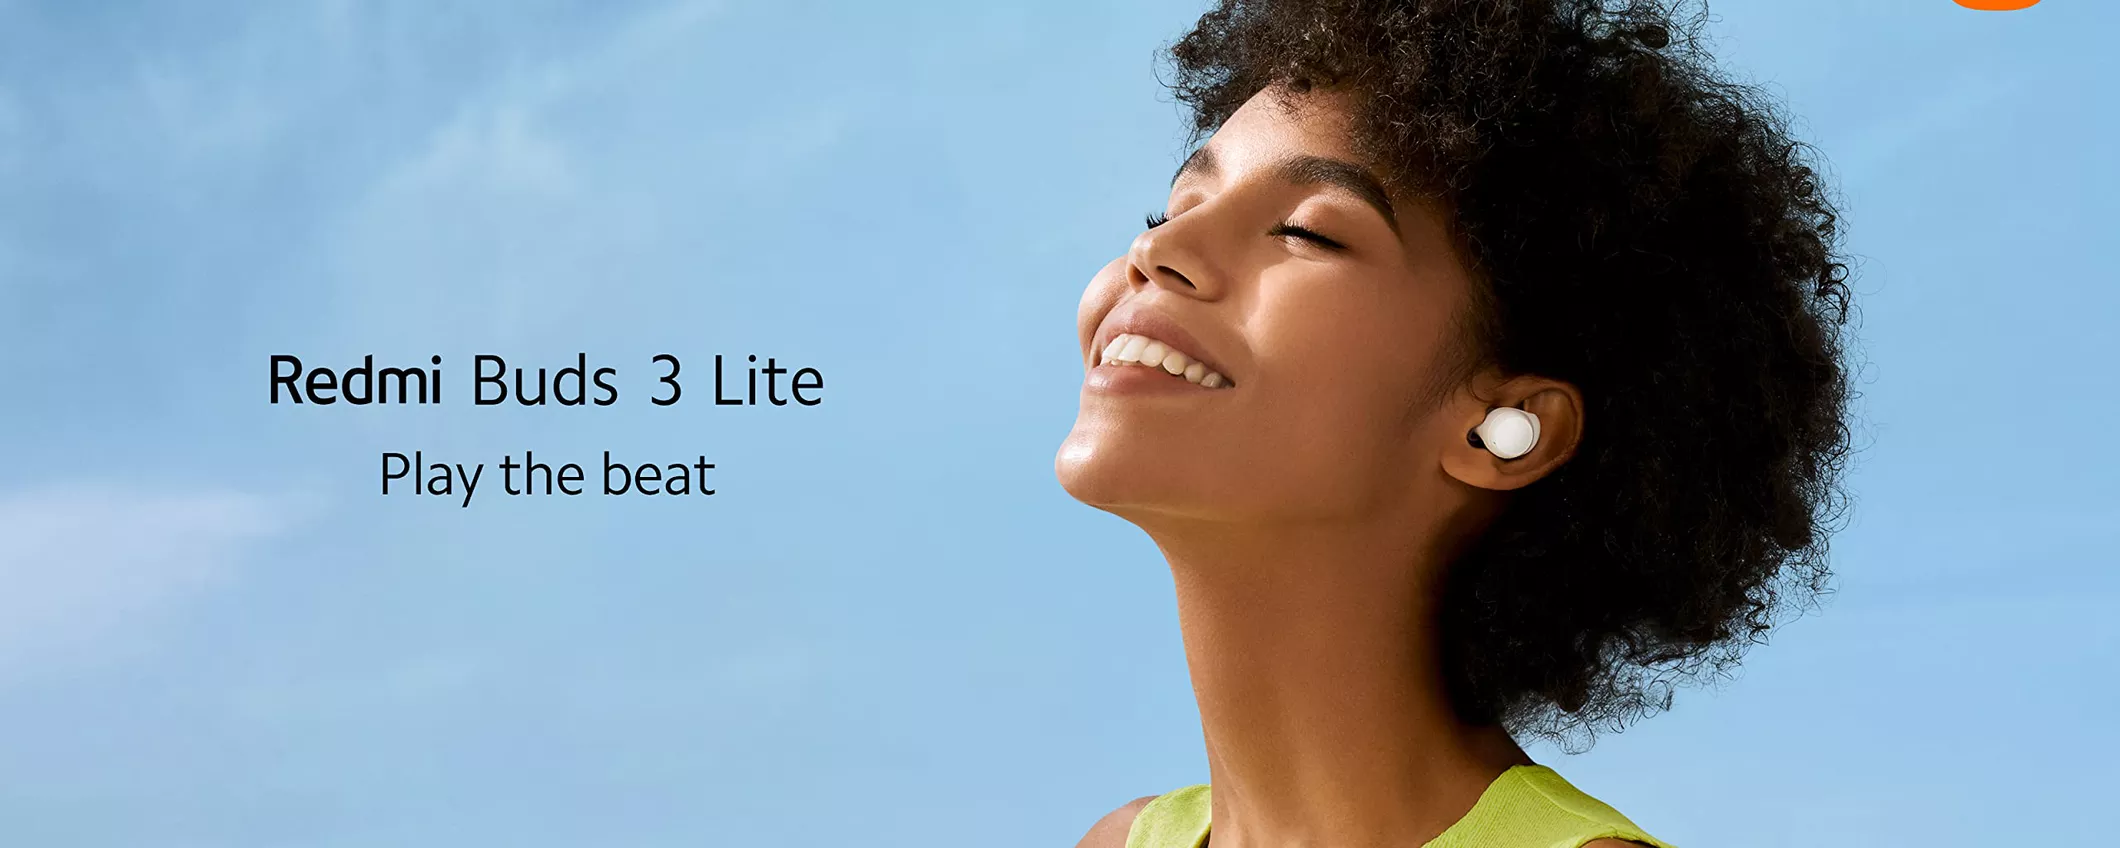 Xiaomi Redmi Buds 3 Lite: oggi tuoi a SOLI 16 EURO, corri su Amazon!